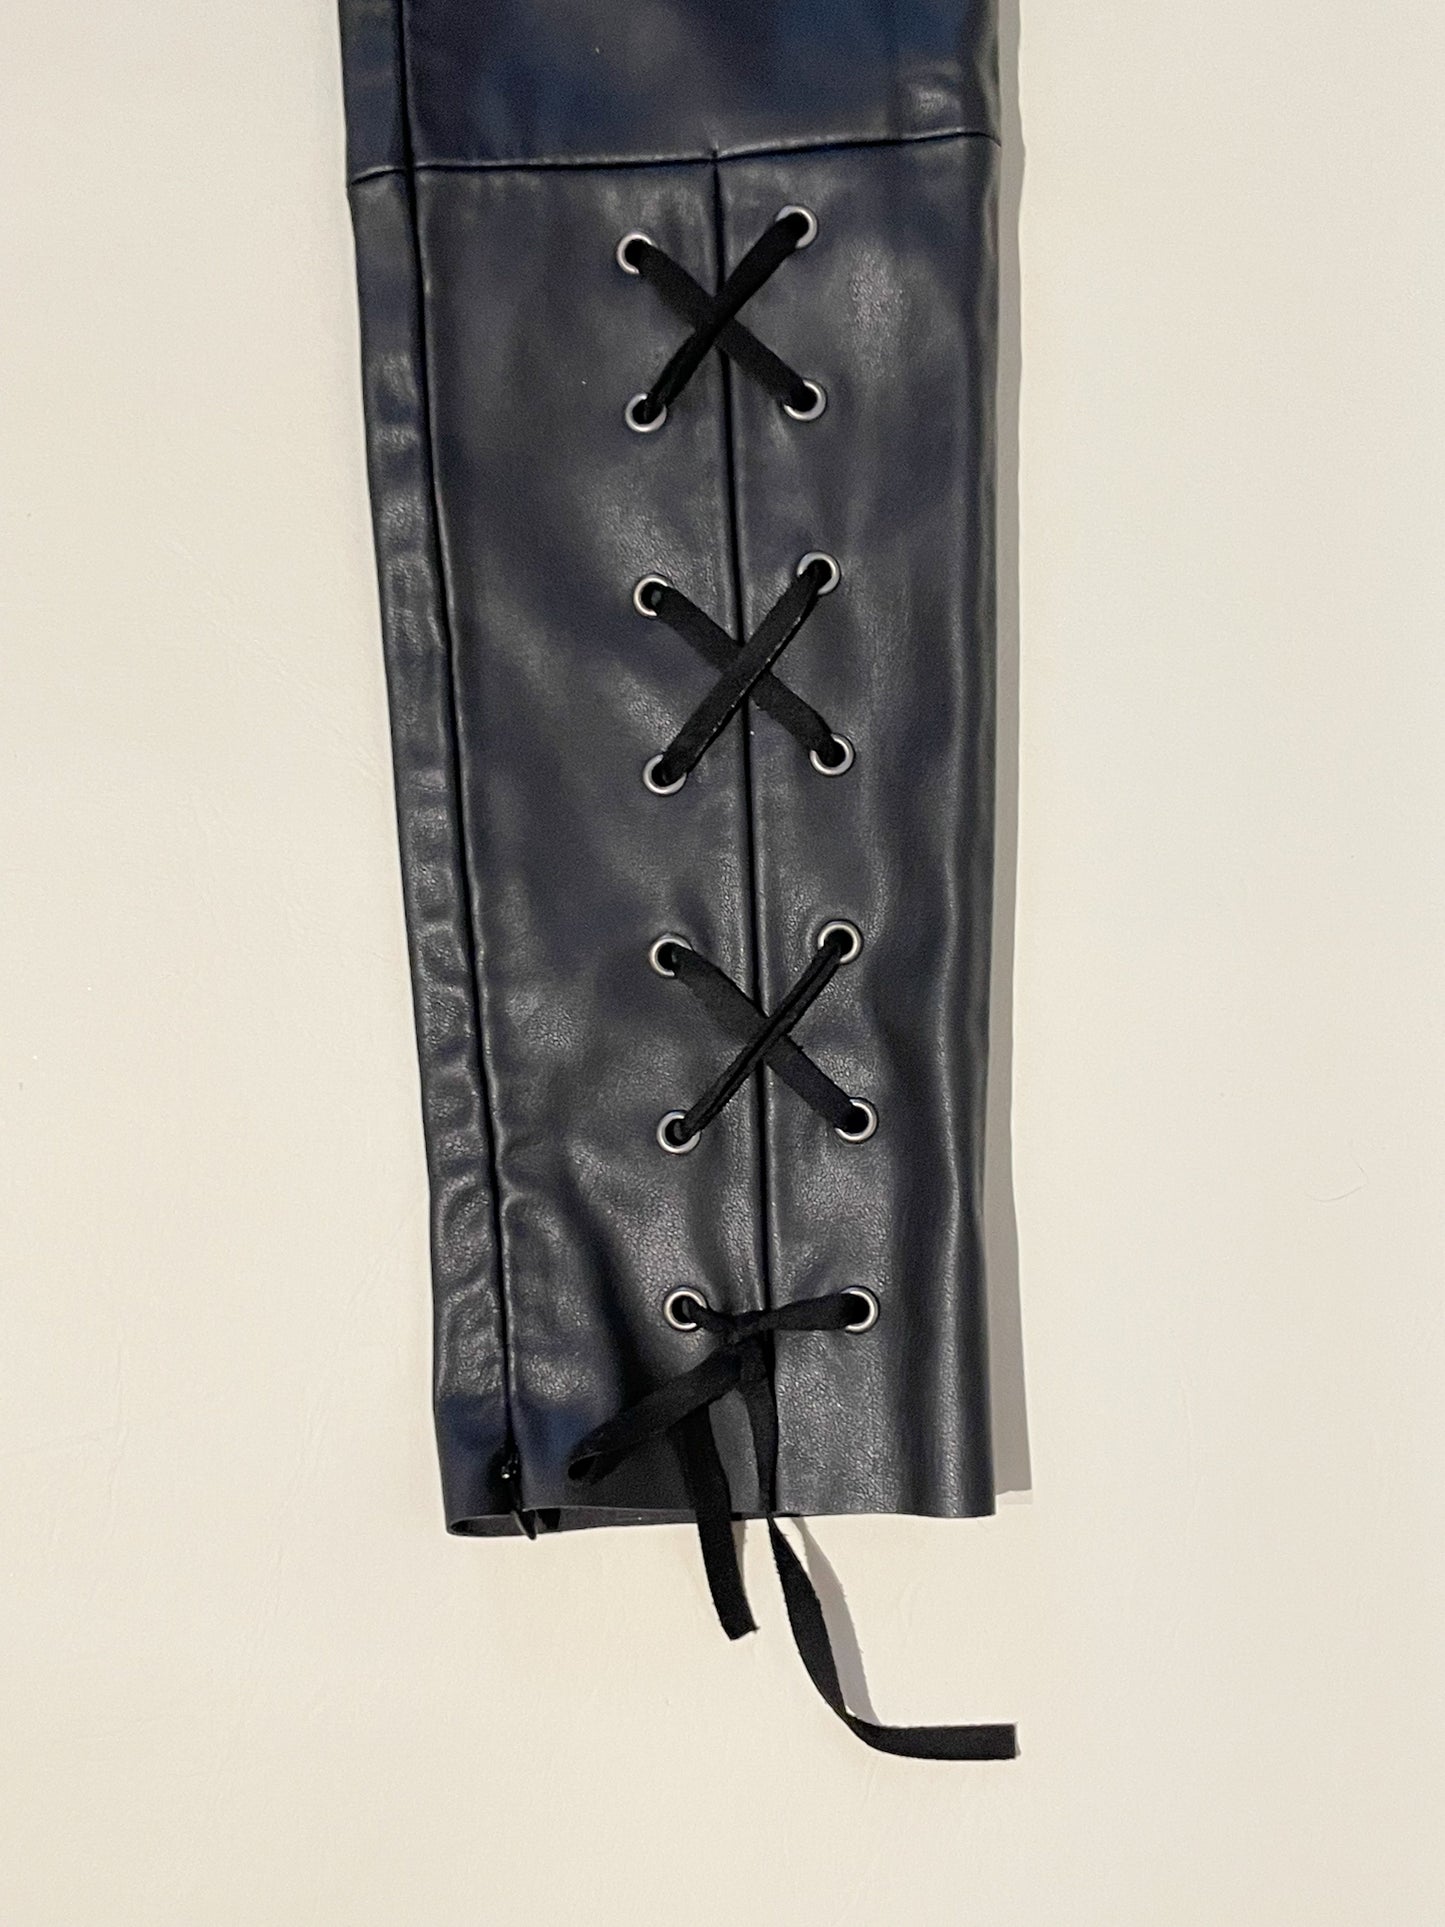 Dex Black Faux Leather Lace Up Zipper Legging Pants - XS